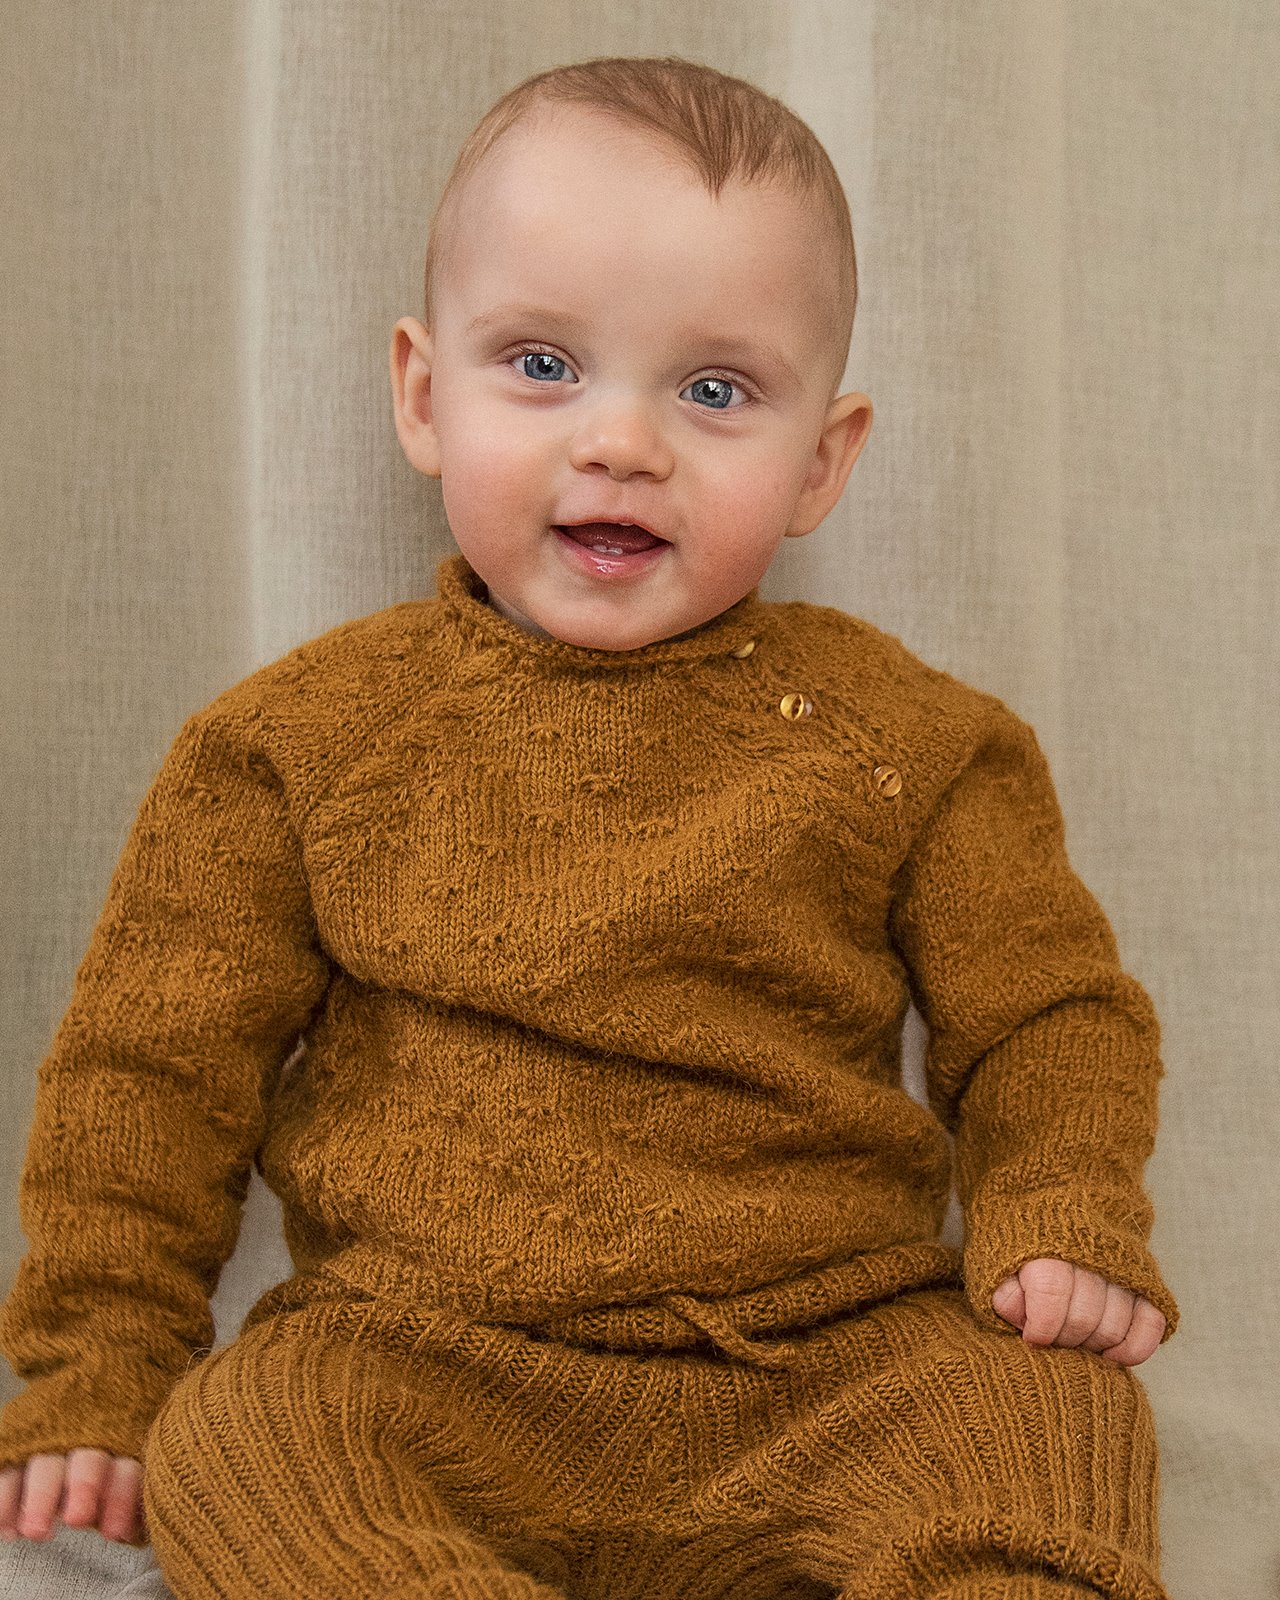 FRAYA strikkeopskrift - Soft Cuddles Baby Sweater, børn & baby - Woolly Version FRAYA6032.jpg